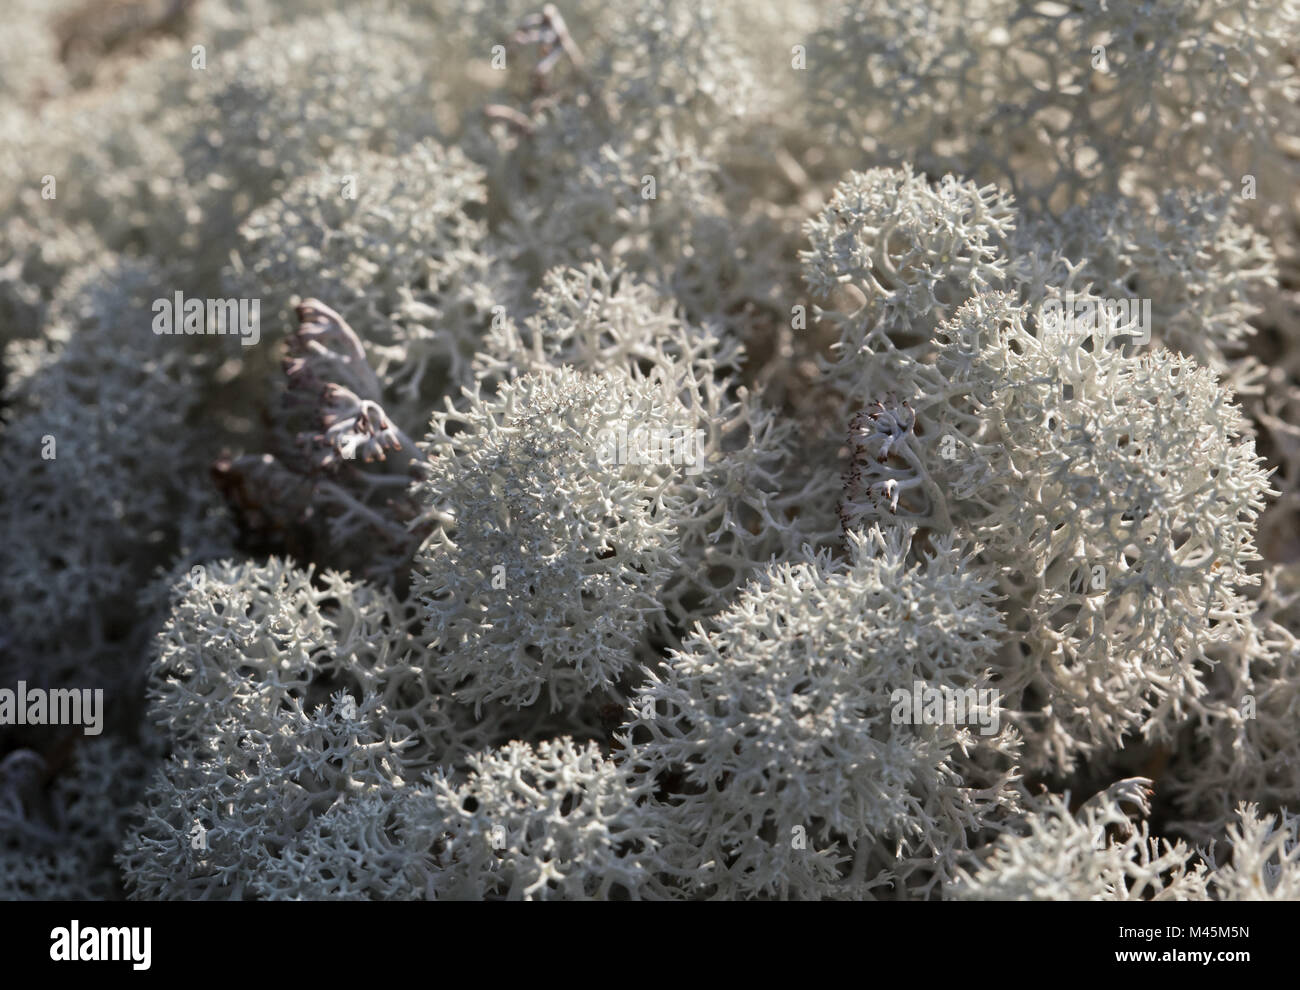 Reindeer lichen, close-up Stock Photo